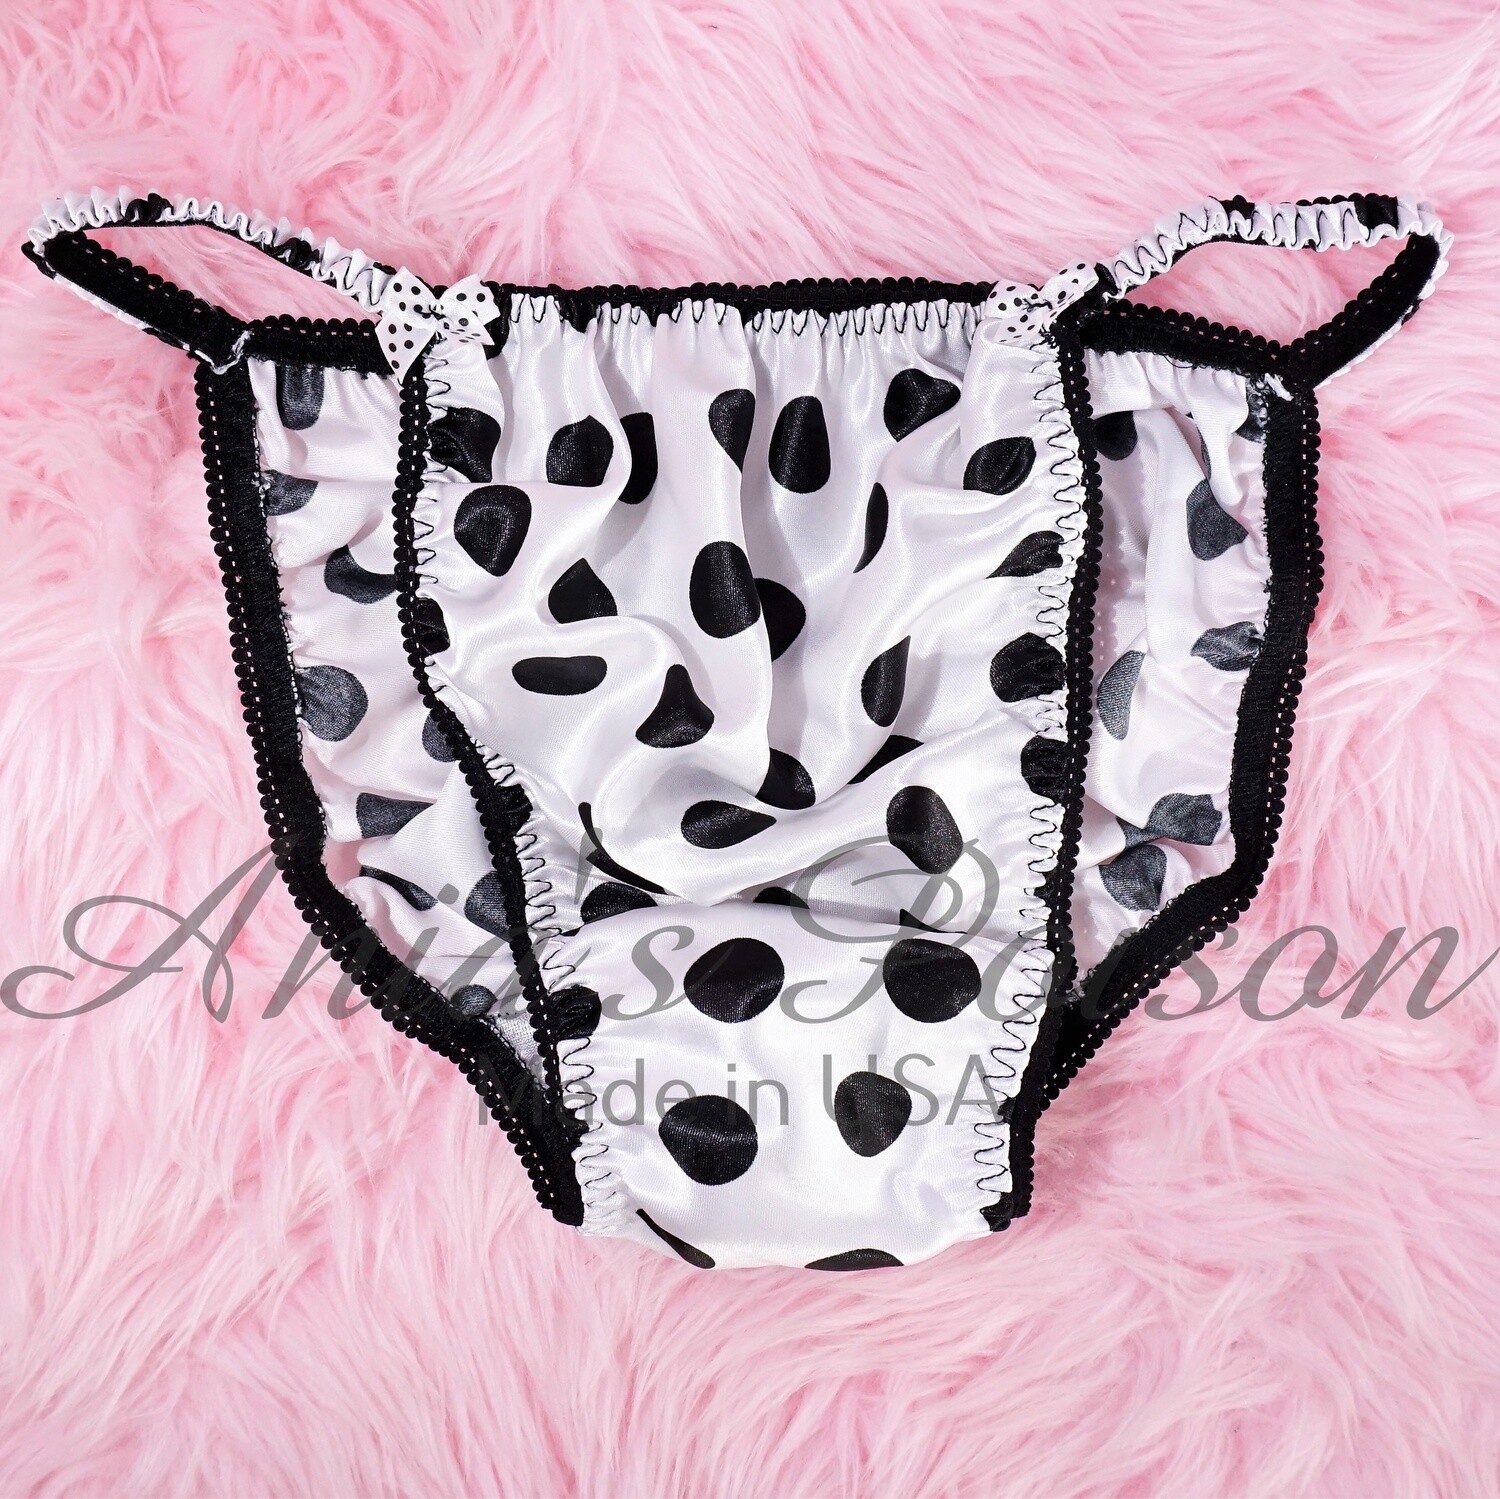 SISSY SATIN PANTIES! Ania's Poison White and Black polka Dot - shiny 100% polyester string bikini - mens underwear